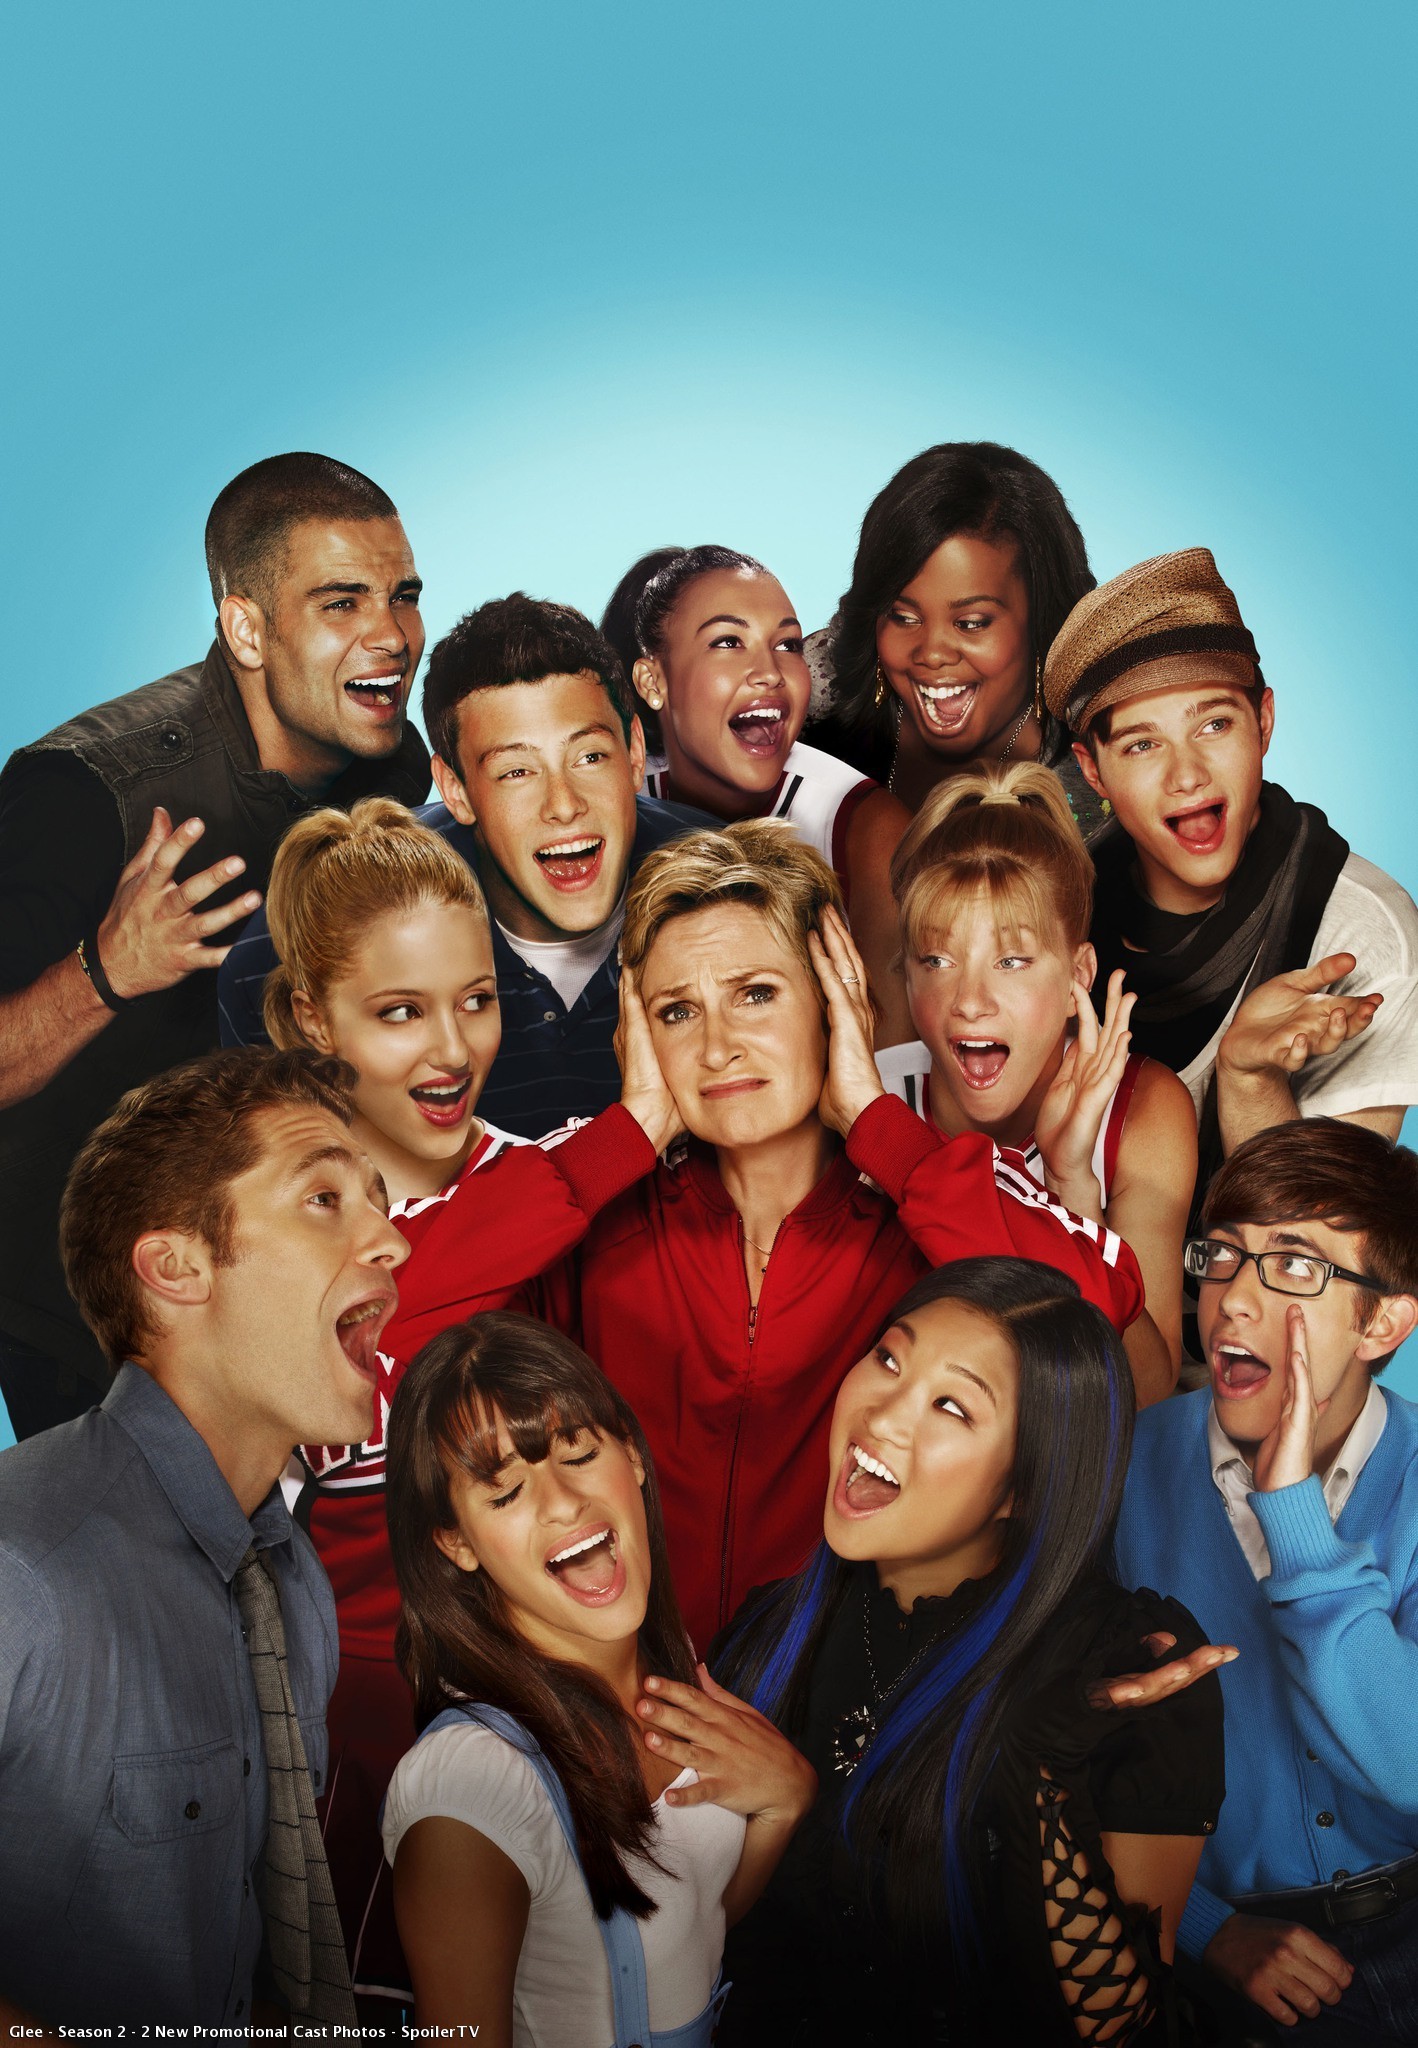 Ver Glee Online Gratis 4 Temporada